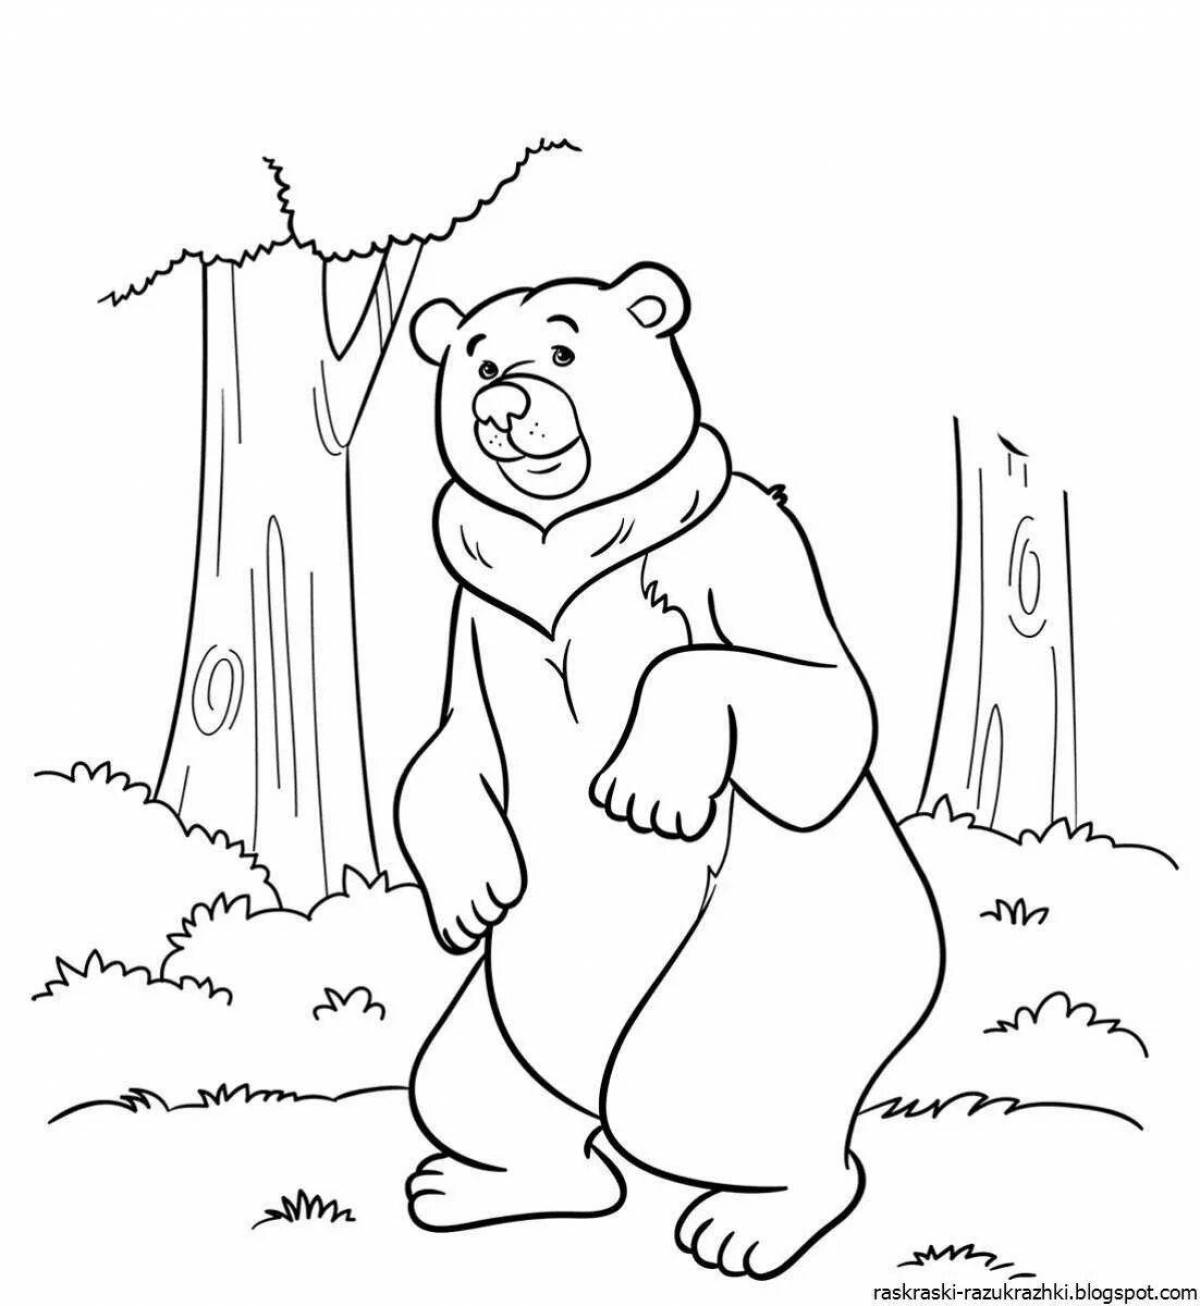 Рисунок веселого медведя